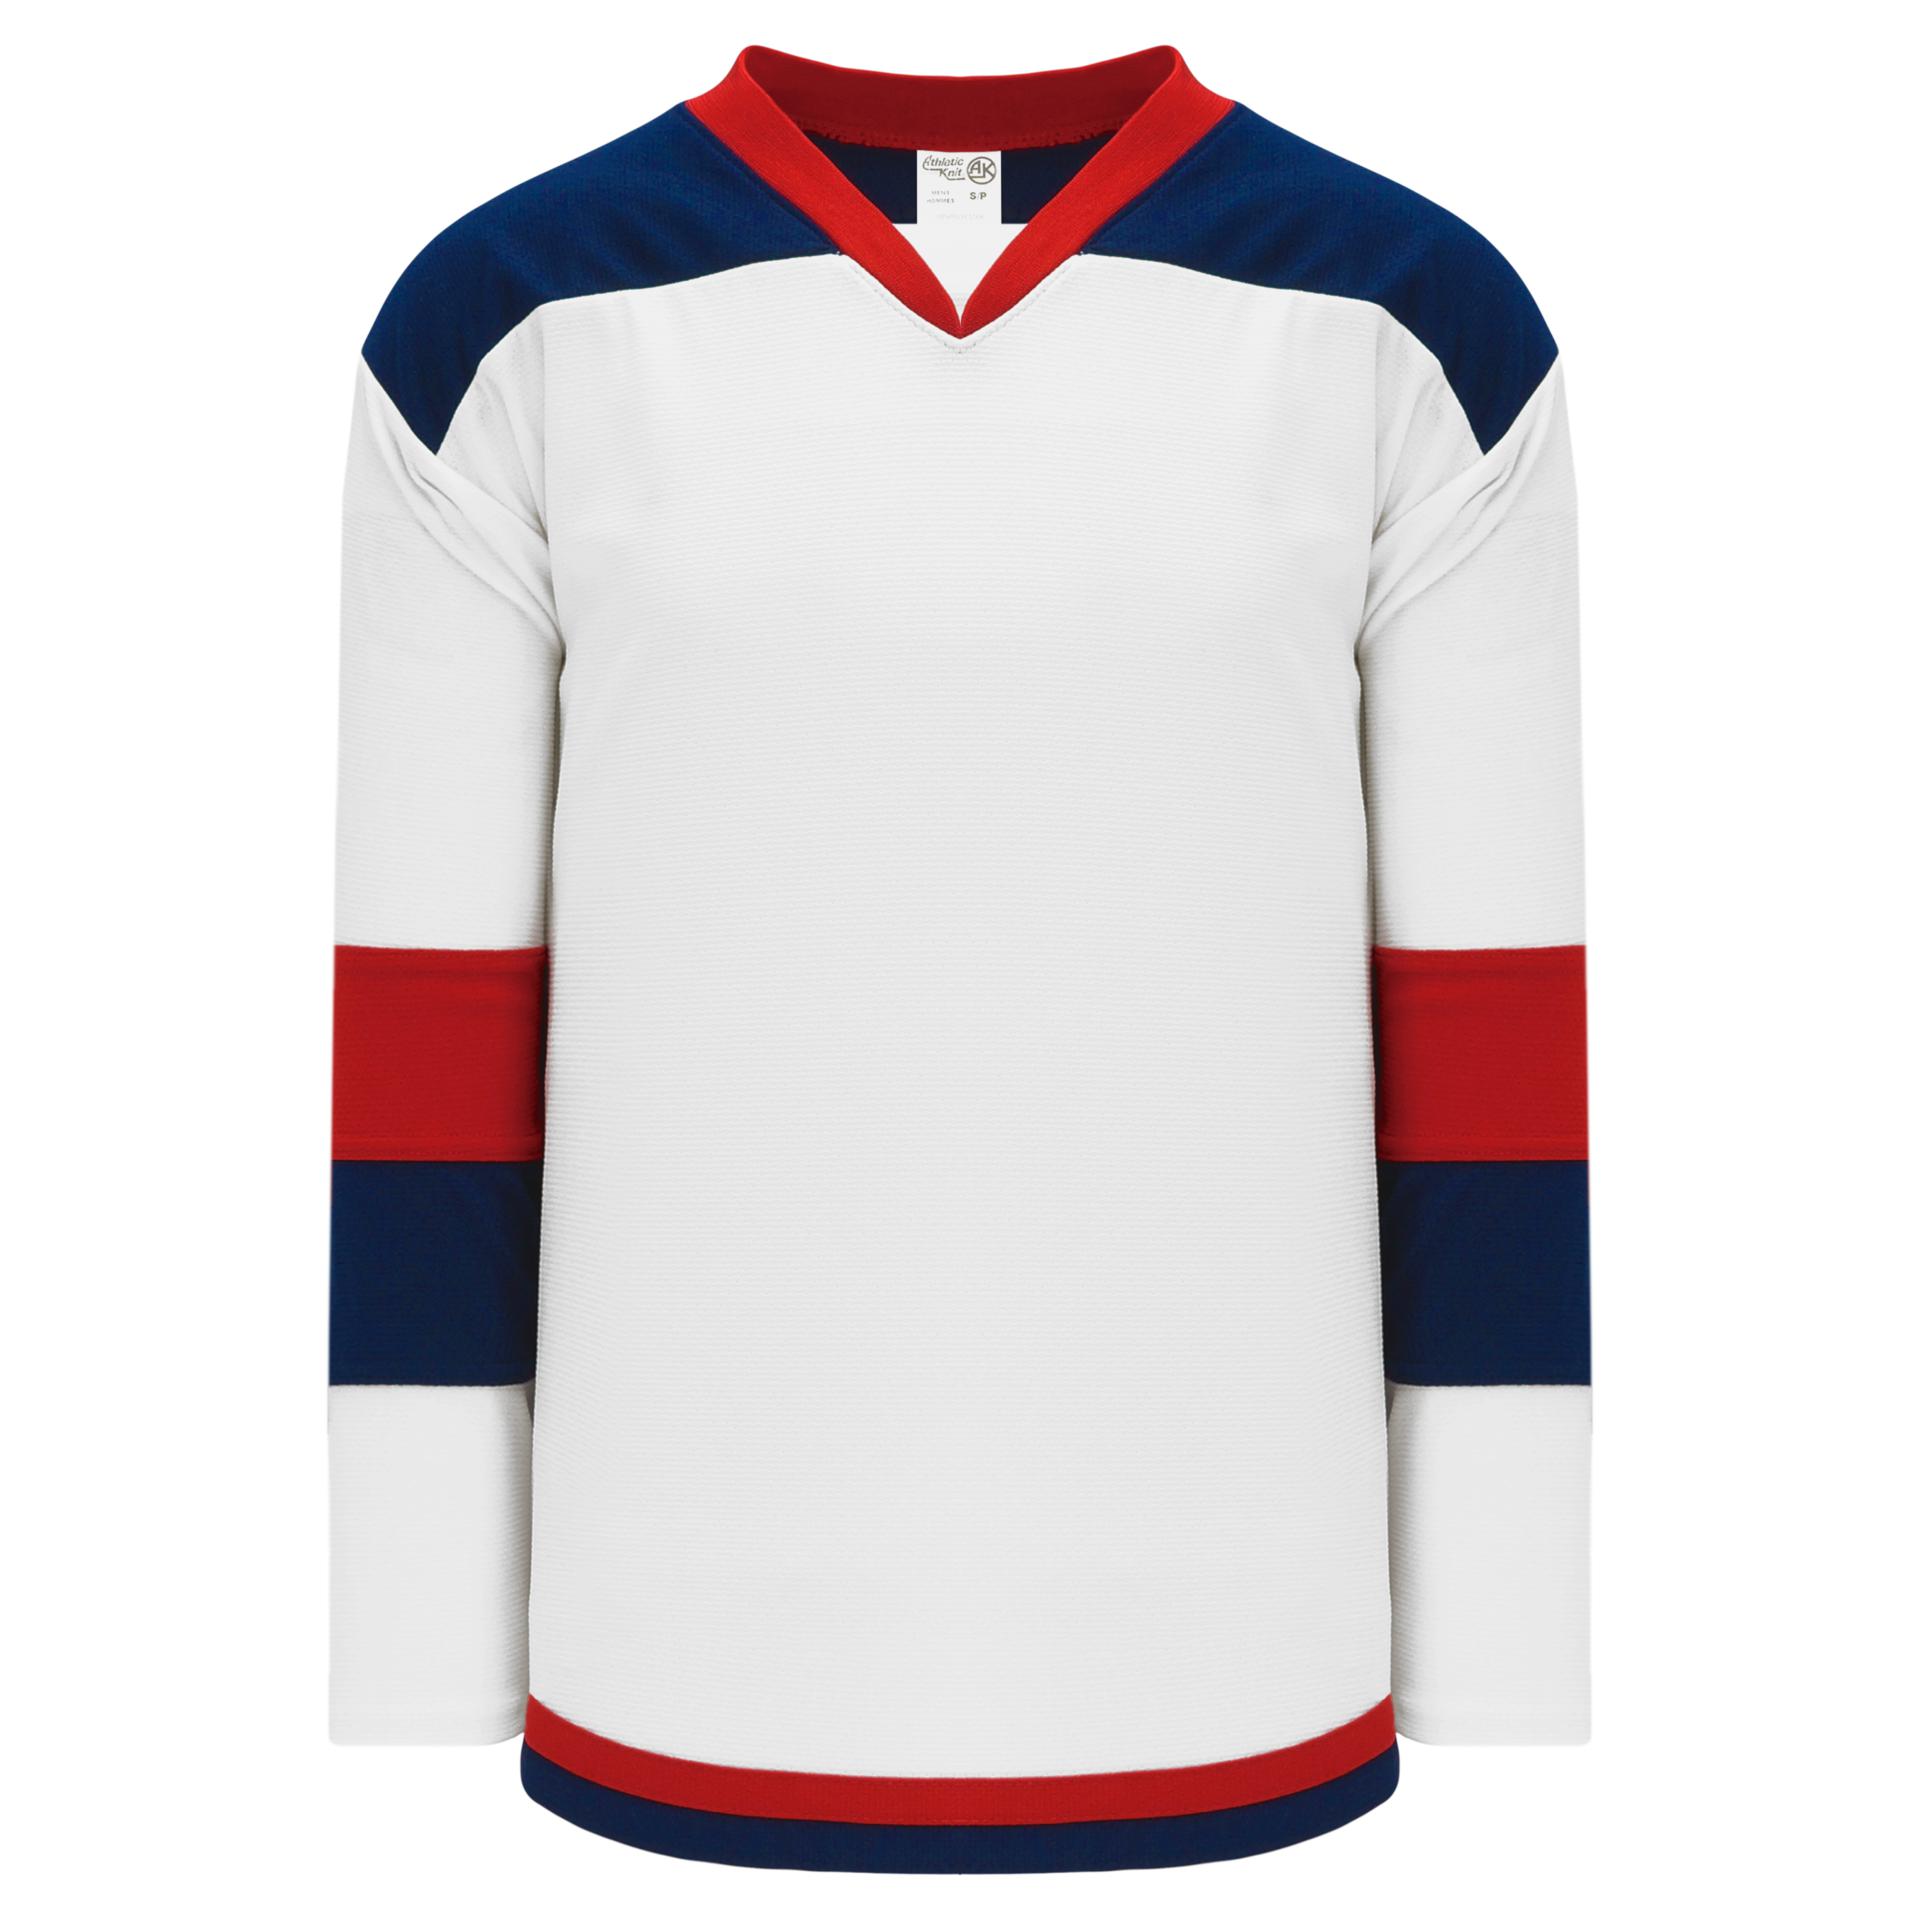 Blank Vintage Vancouver Canucks Hockey Jerseys